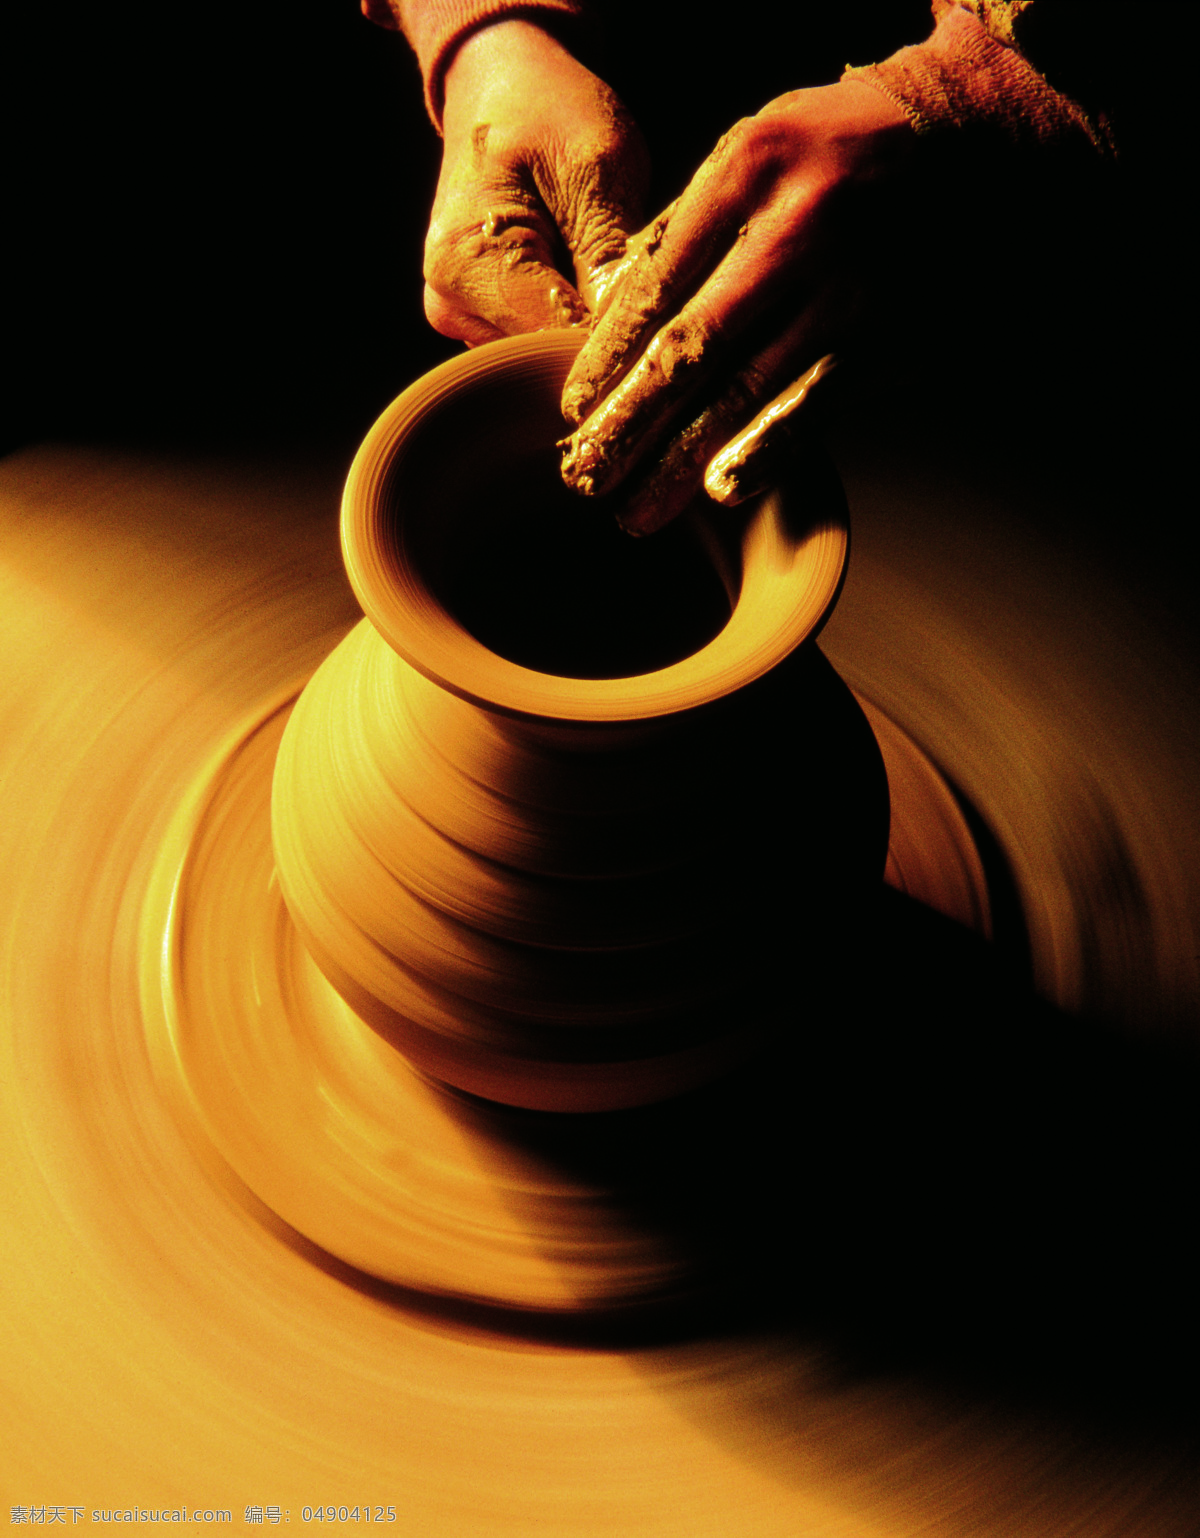 摄影作品陶艺 手工艺术 泥土 摄影作品 陶艺 转动 文化艺术 传统文化